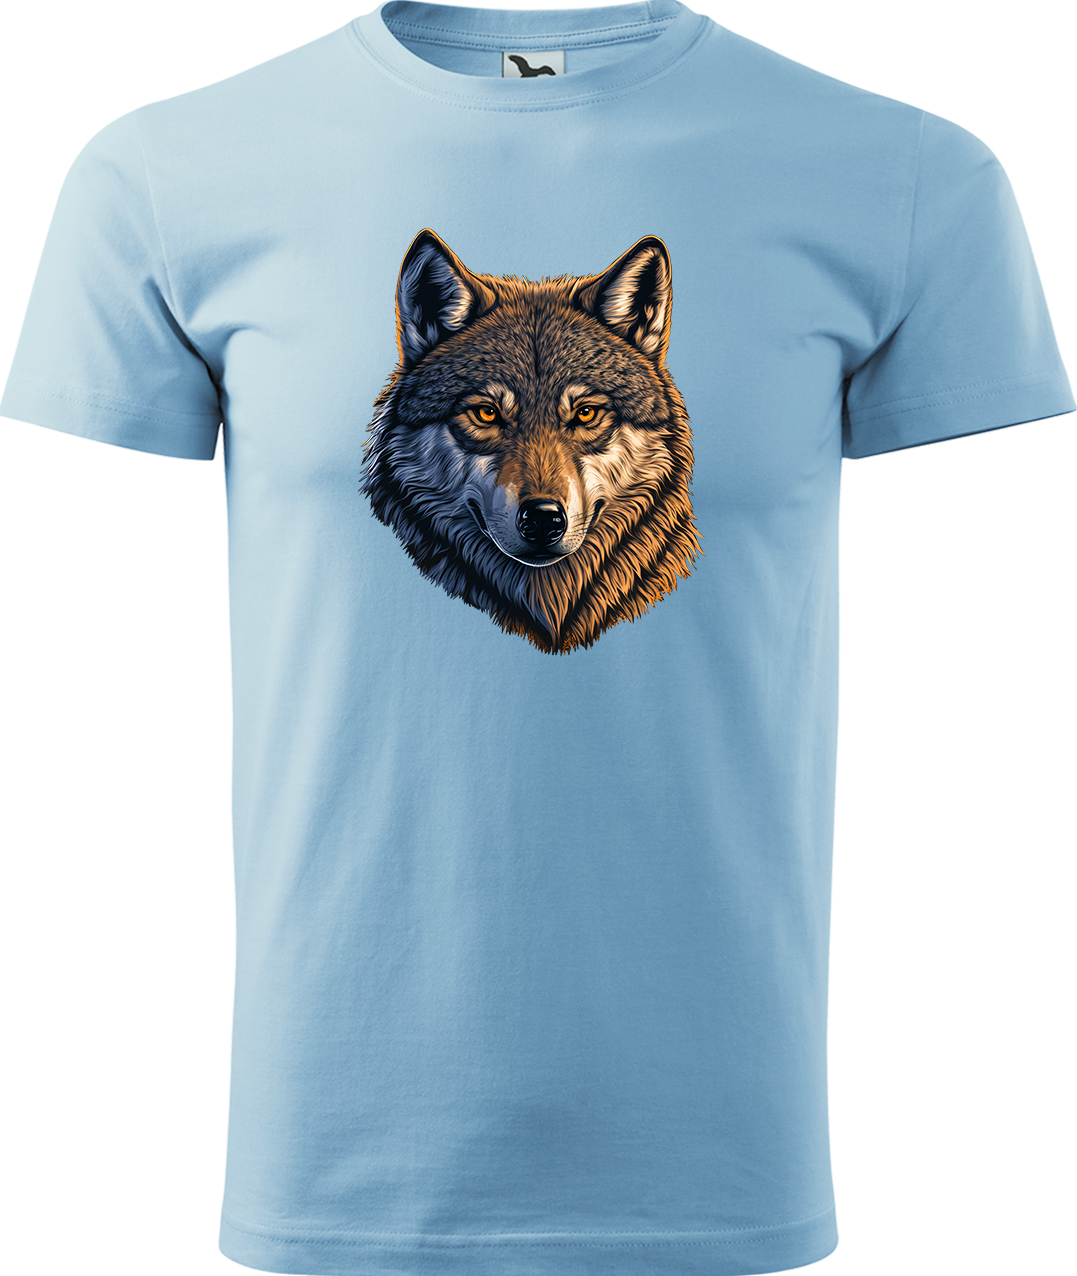 Pánské tričko s vlkem - Hlava vlka Velikost: S, Barva: Nebesky modrá (15), Střih: pánský